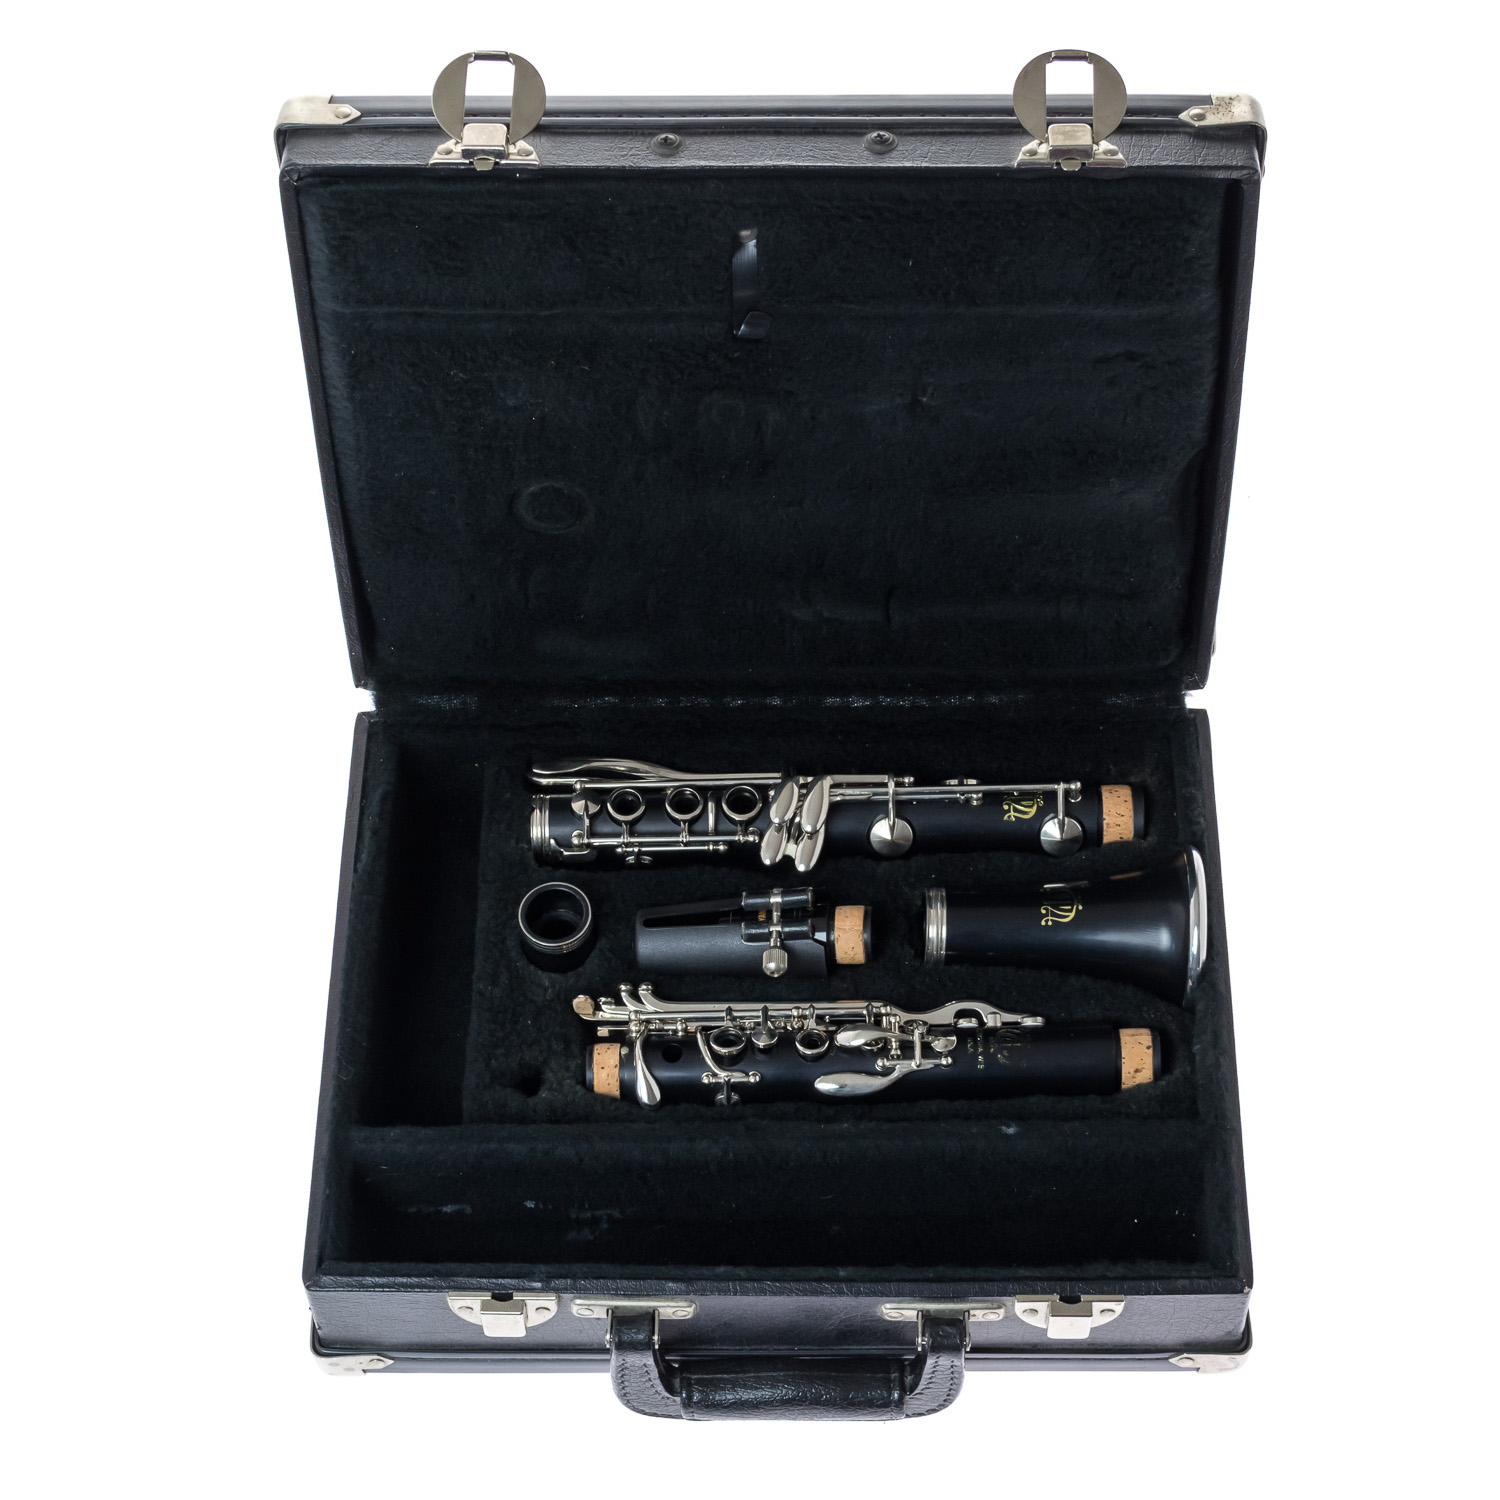 Pre-Owned Vito-Leblanc Clarinet - Nr 014437